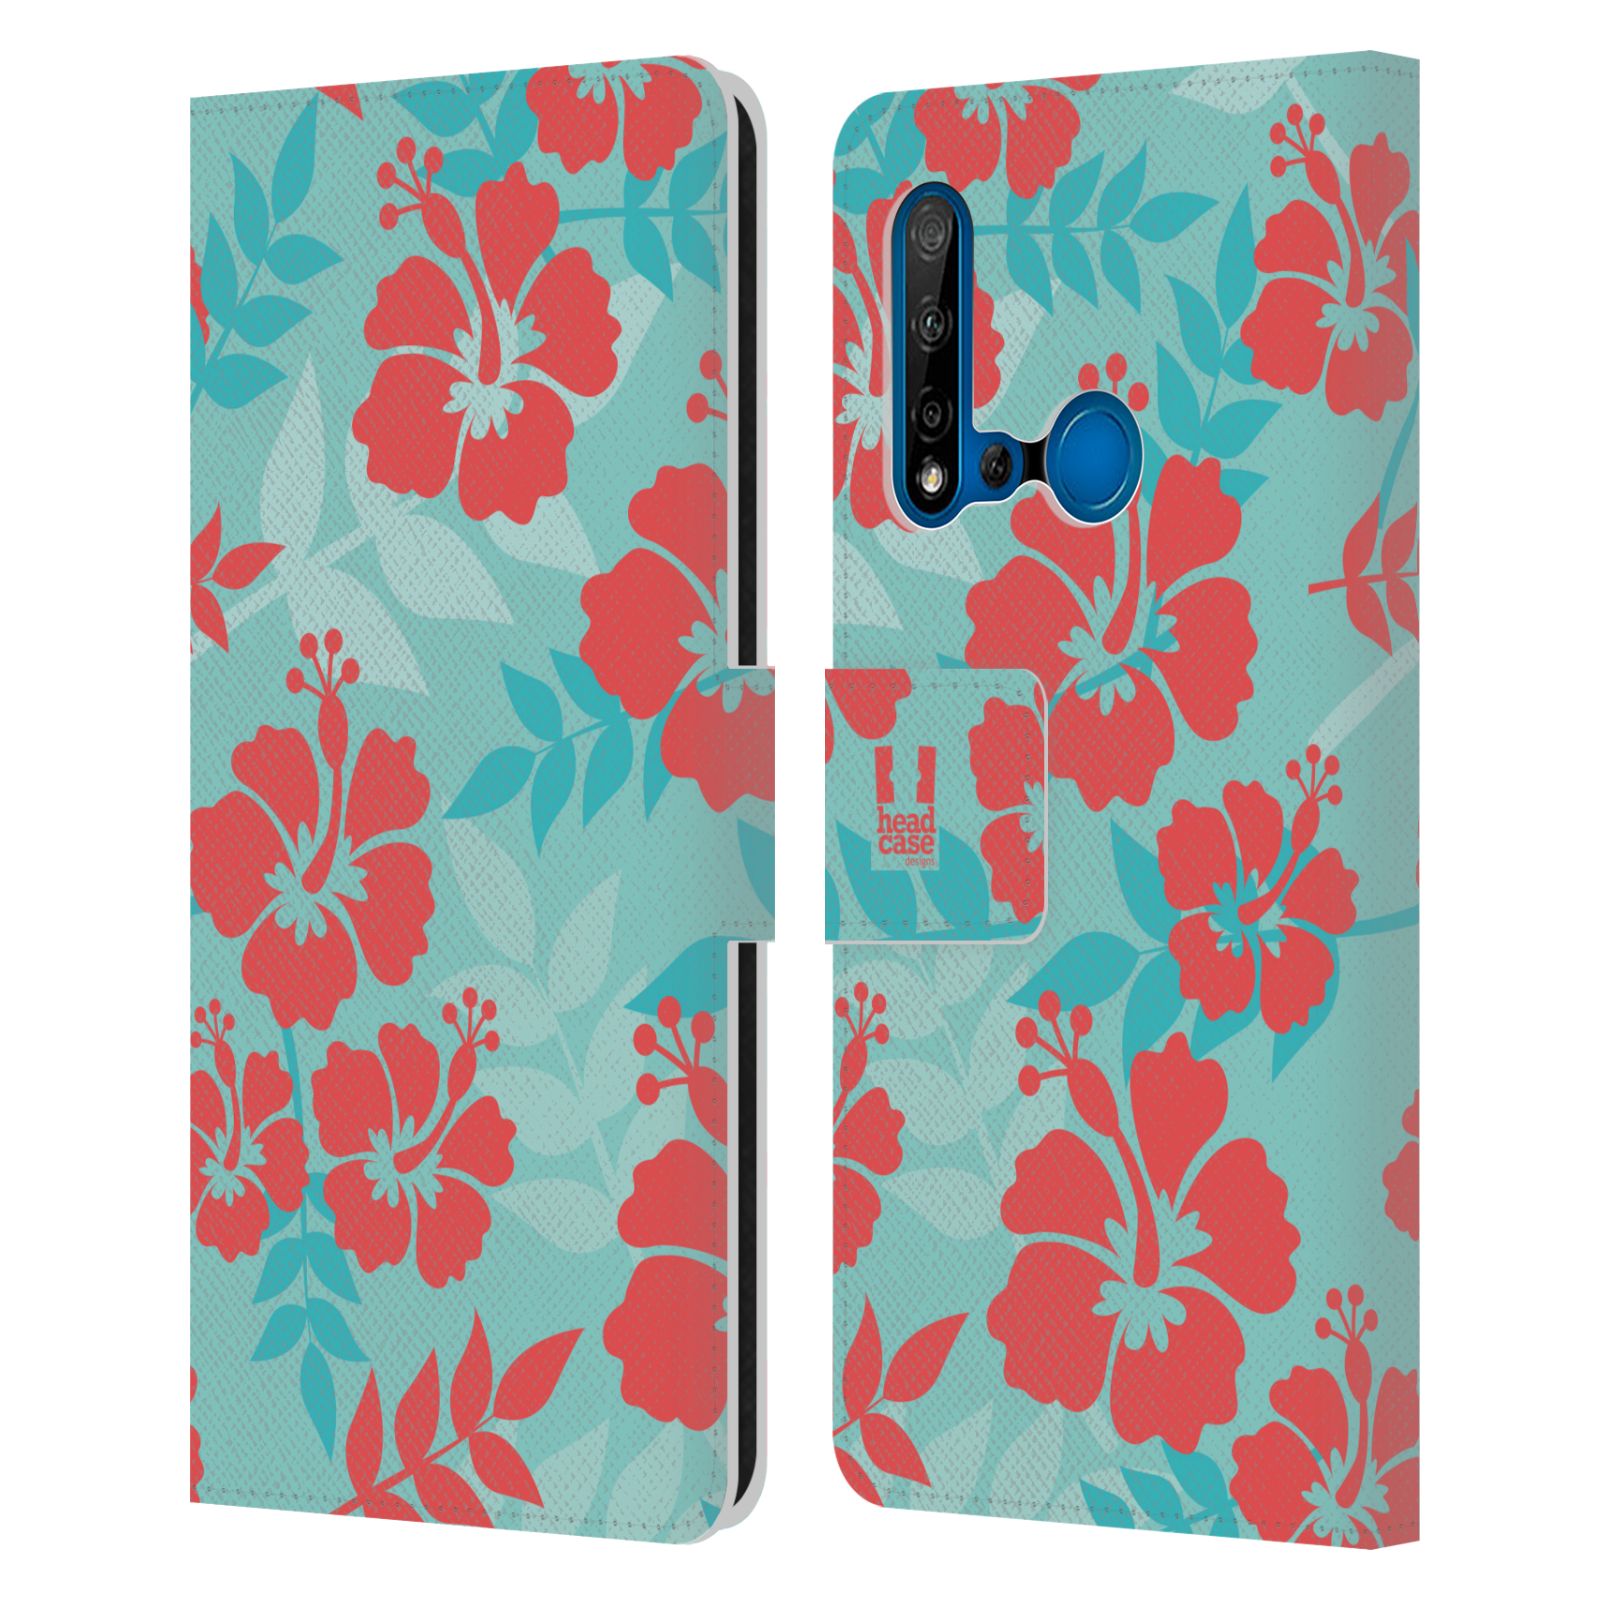 Pouzdro na mobil Huawei P20 LITE 2019 Havajský vzor Ibišek květ modrá a růžová